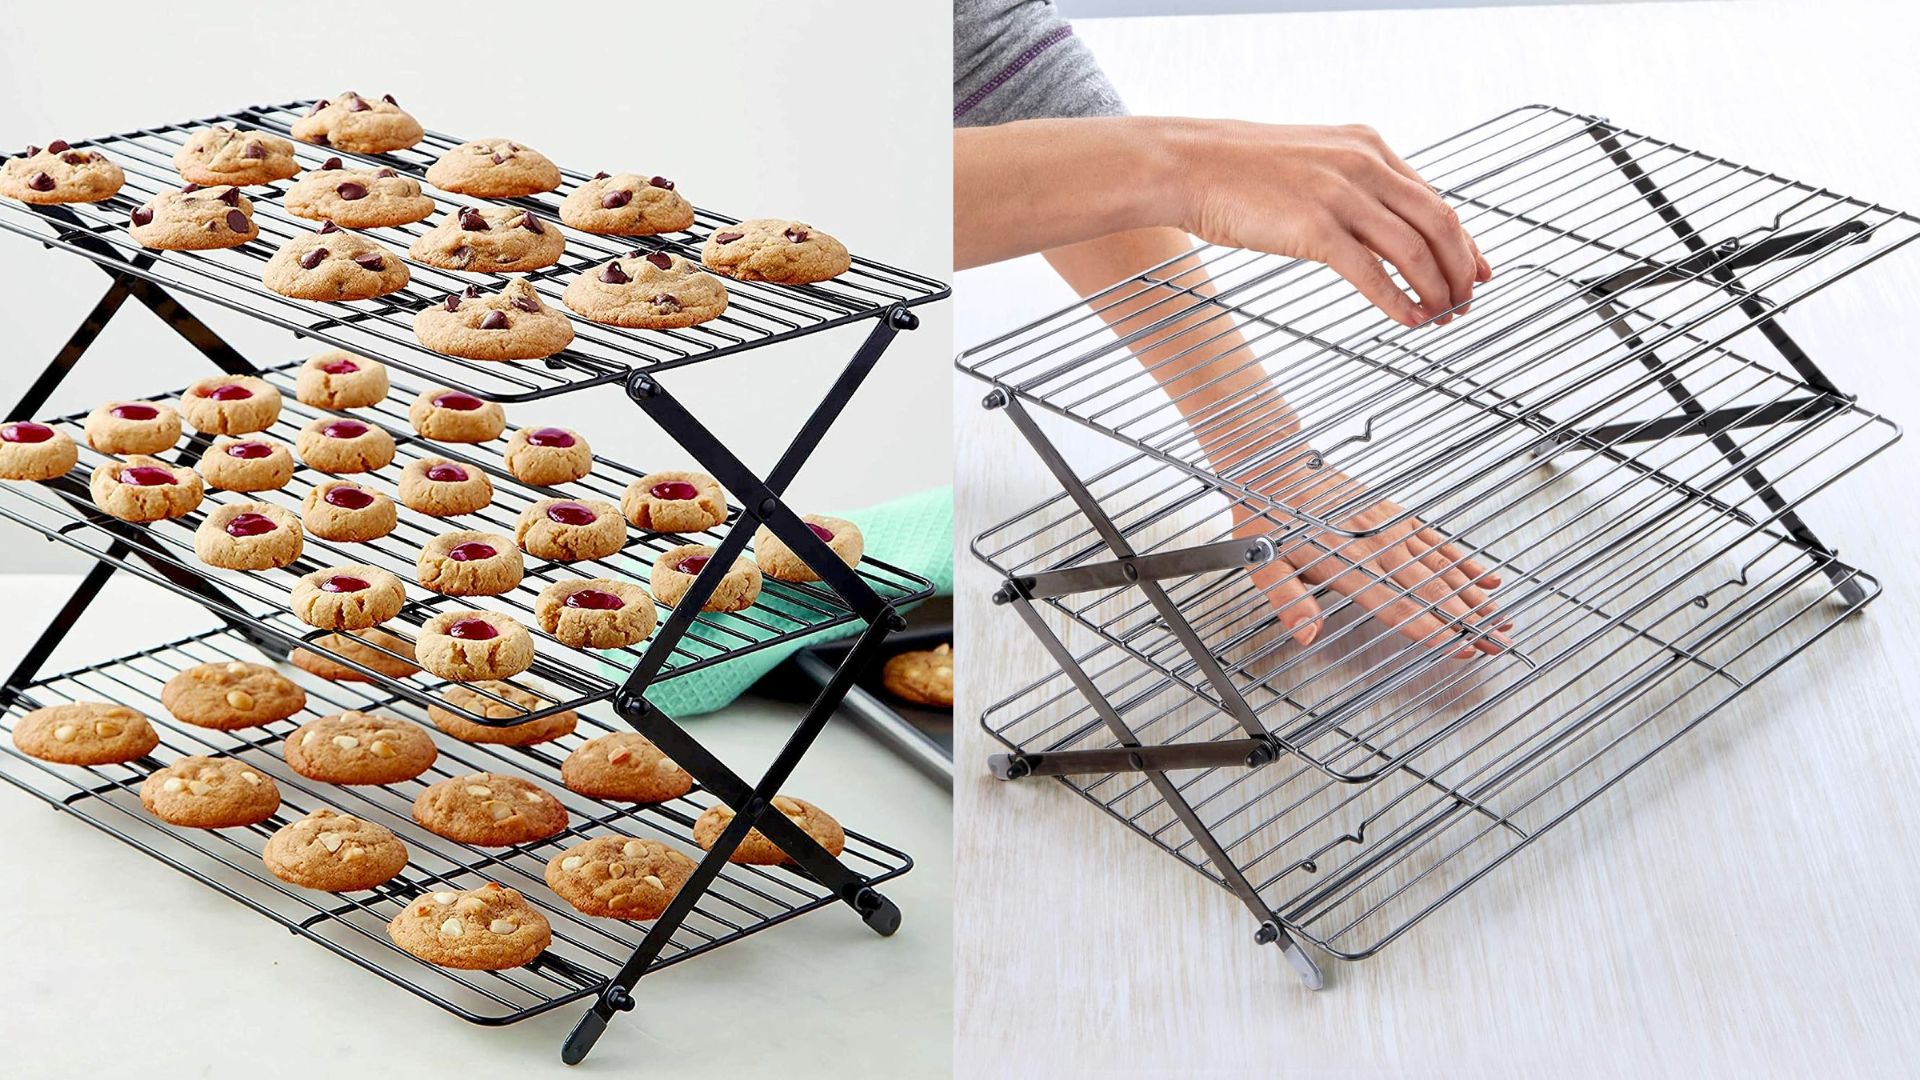 Kitchenatics Roasting & Baking Sheet with Cooling Rack: Quarter Cookie Pan Tray